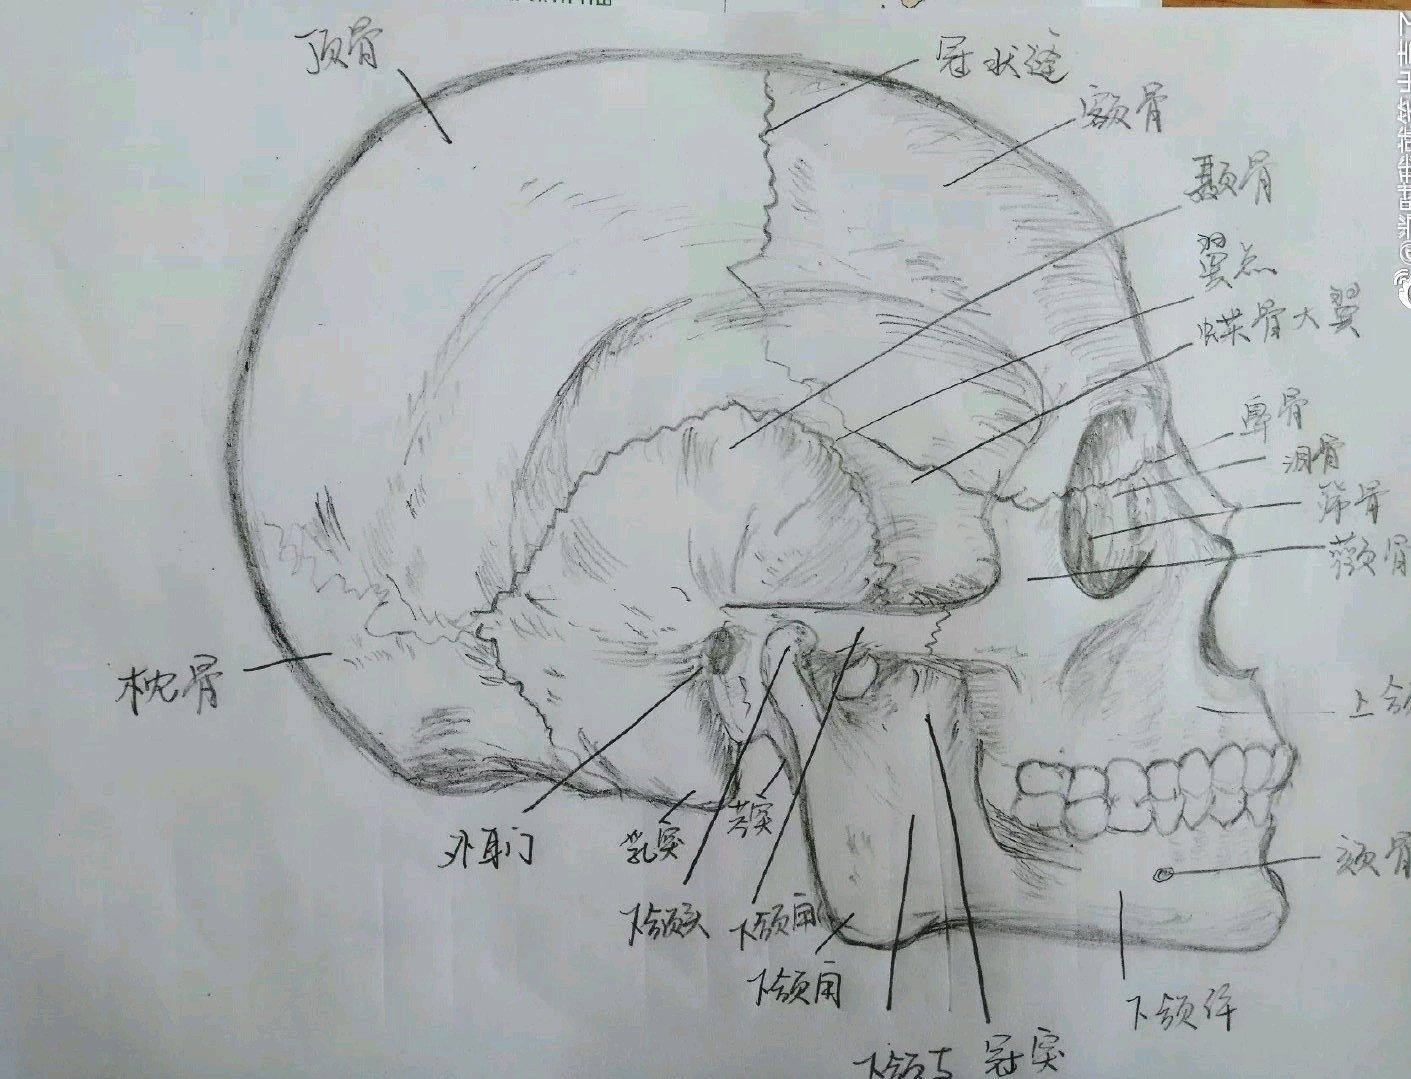 一张人头骨骼分布图